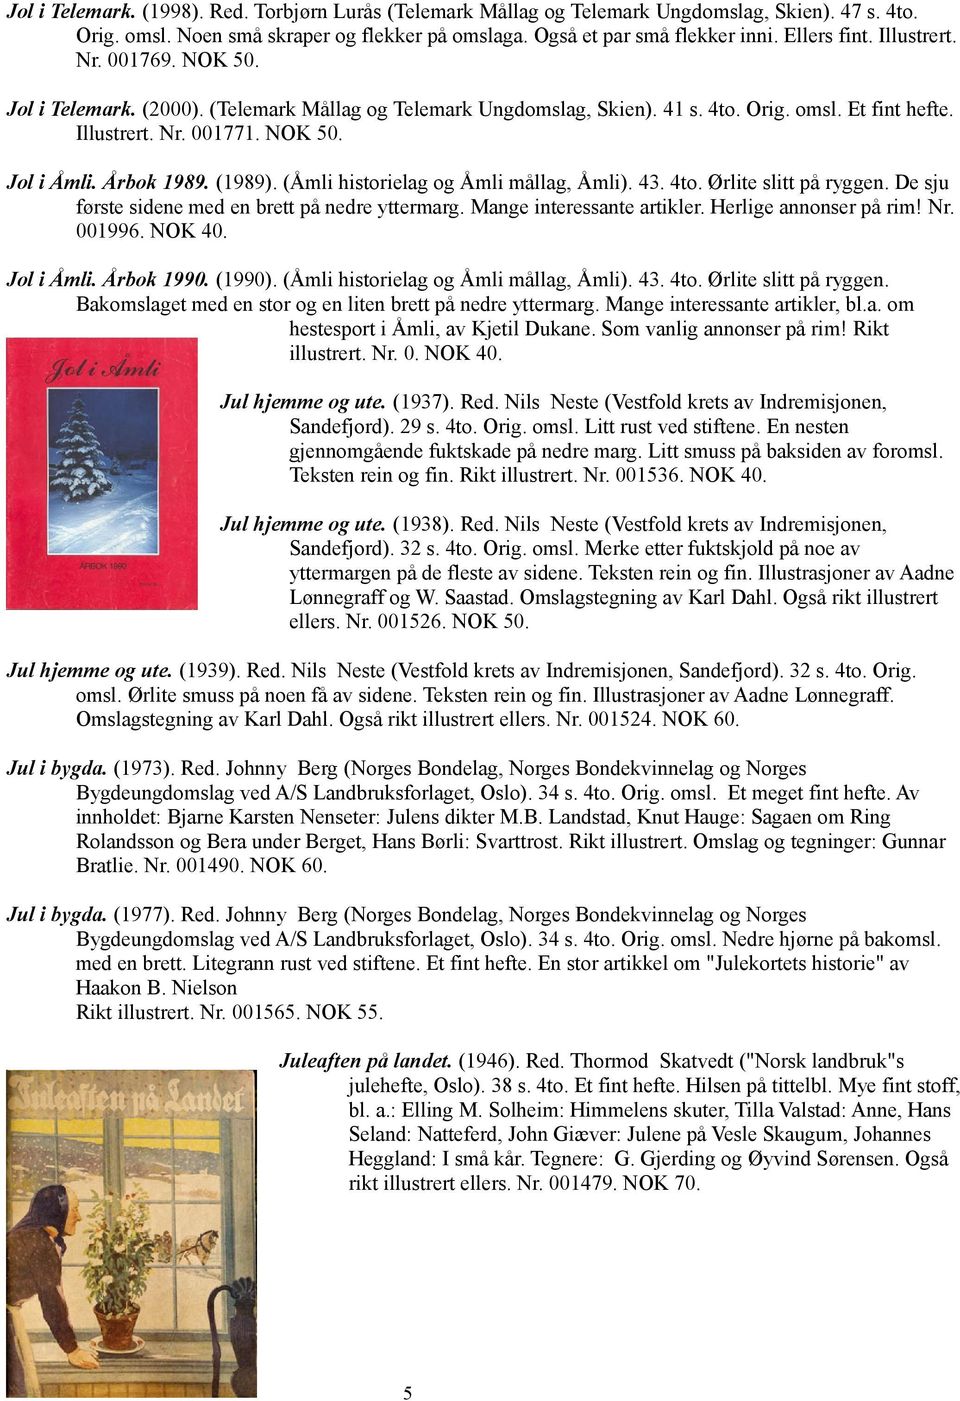 (1989). (Åmli historielag og Åmli mållag, Åmli). 43. 4to. Ørlite slitt på ryggen. De sju første sidene med en brett på nedre yttermarg. Mange interessante artikler. Herlige annonser på rim! Nr.